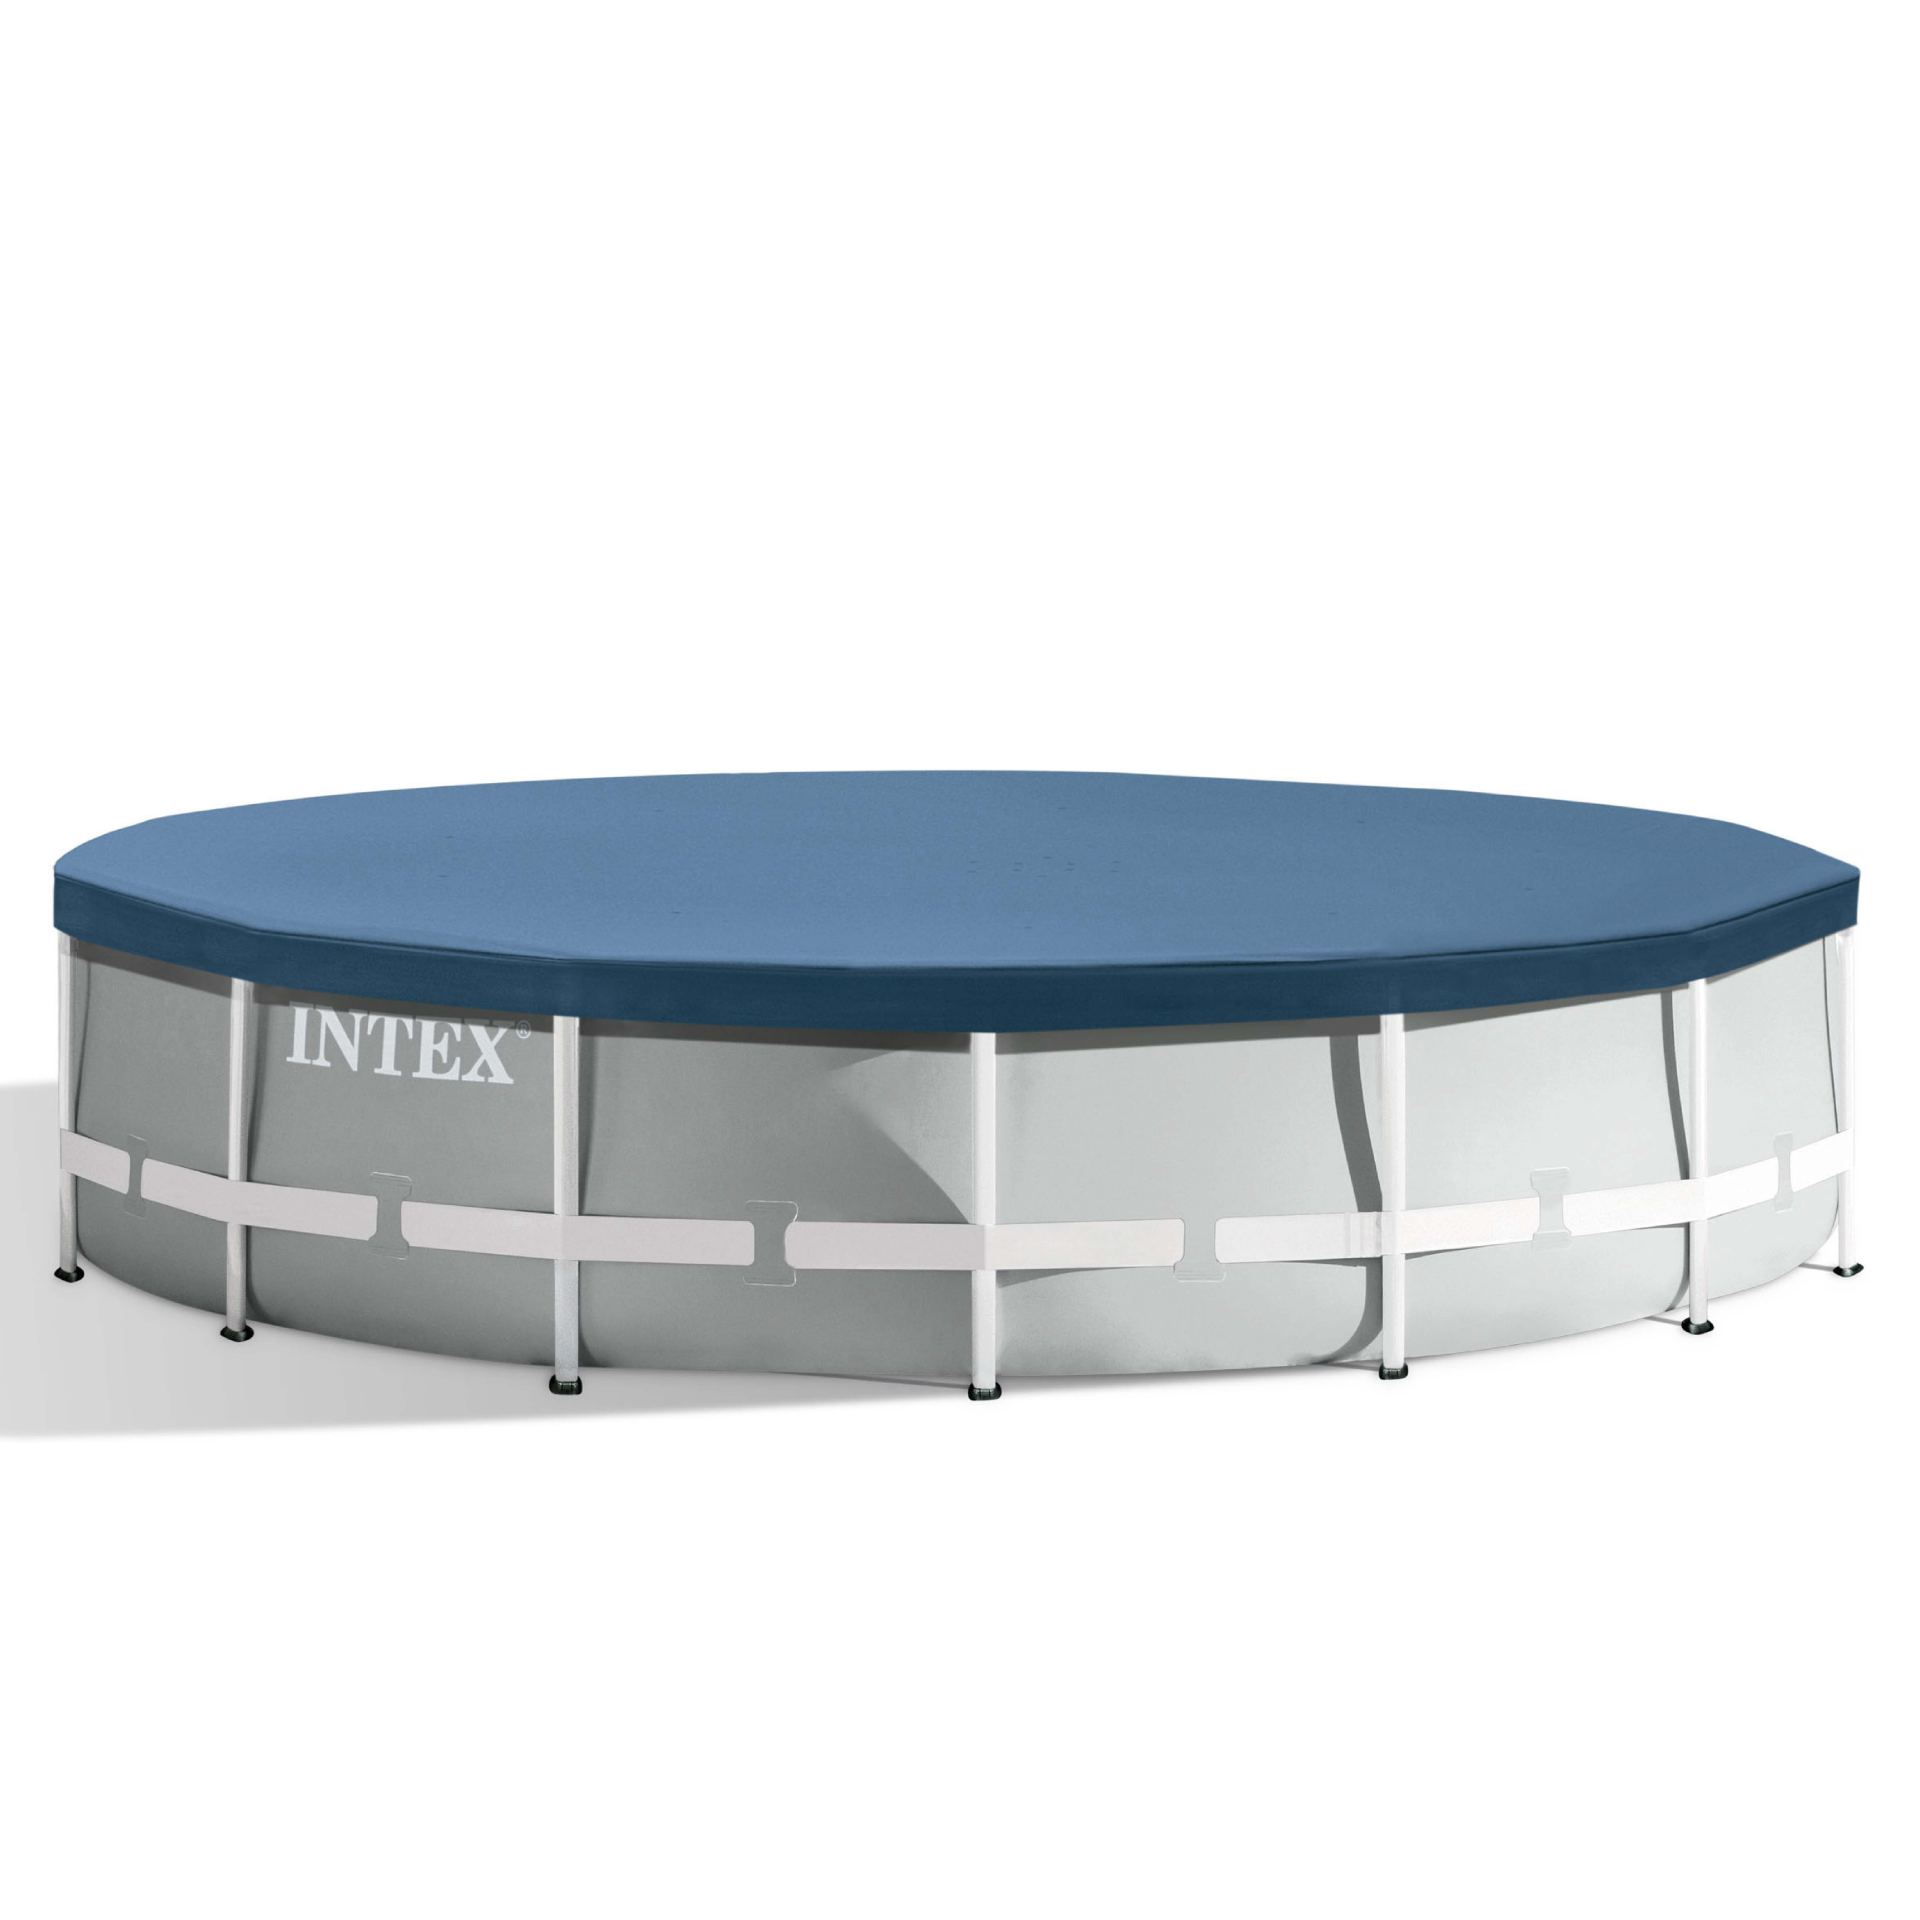 Intex round pool cover 457cm x 25cm